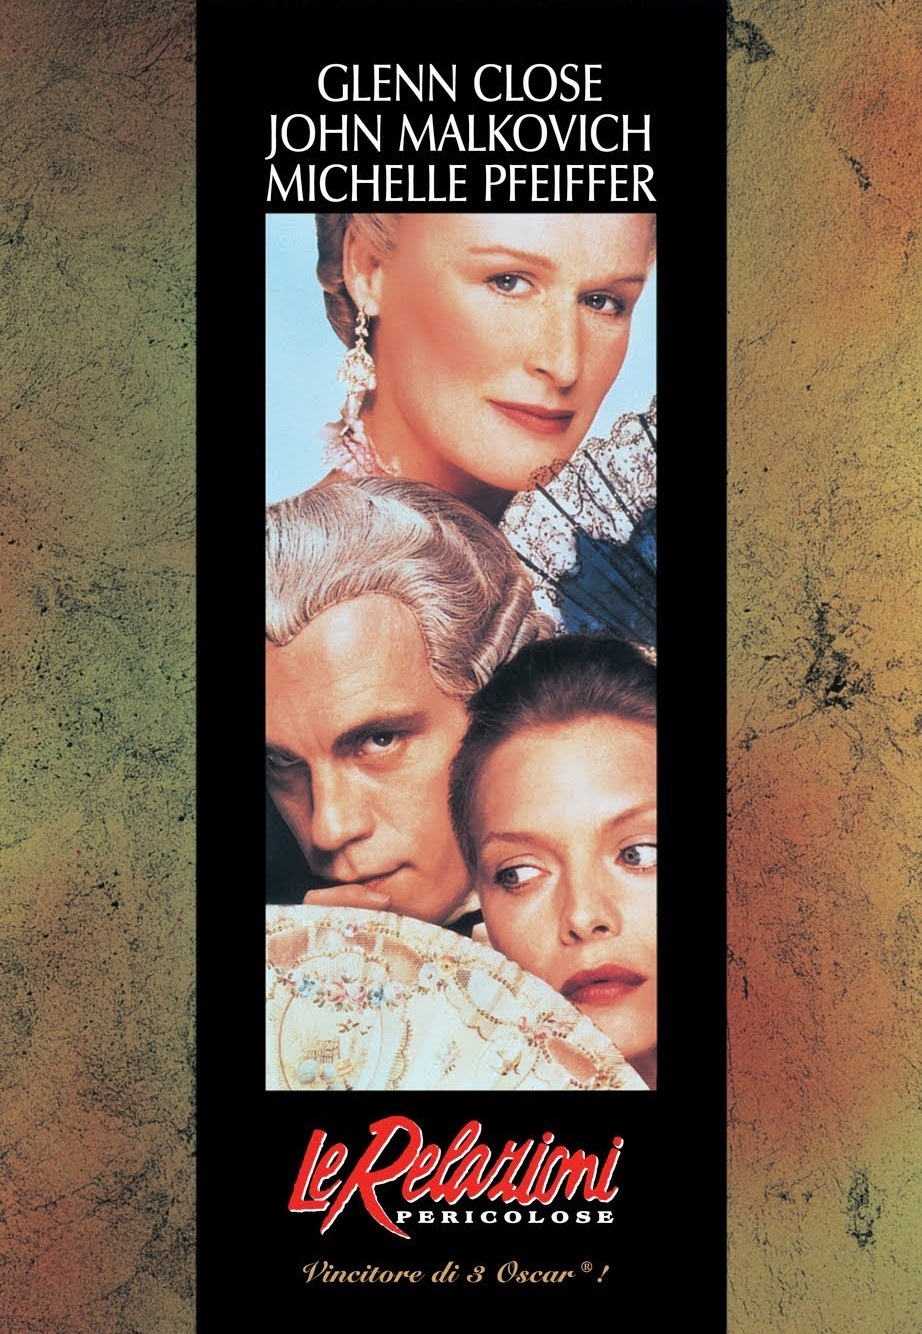 Le relazioni pericolose [HD] (1988)